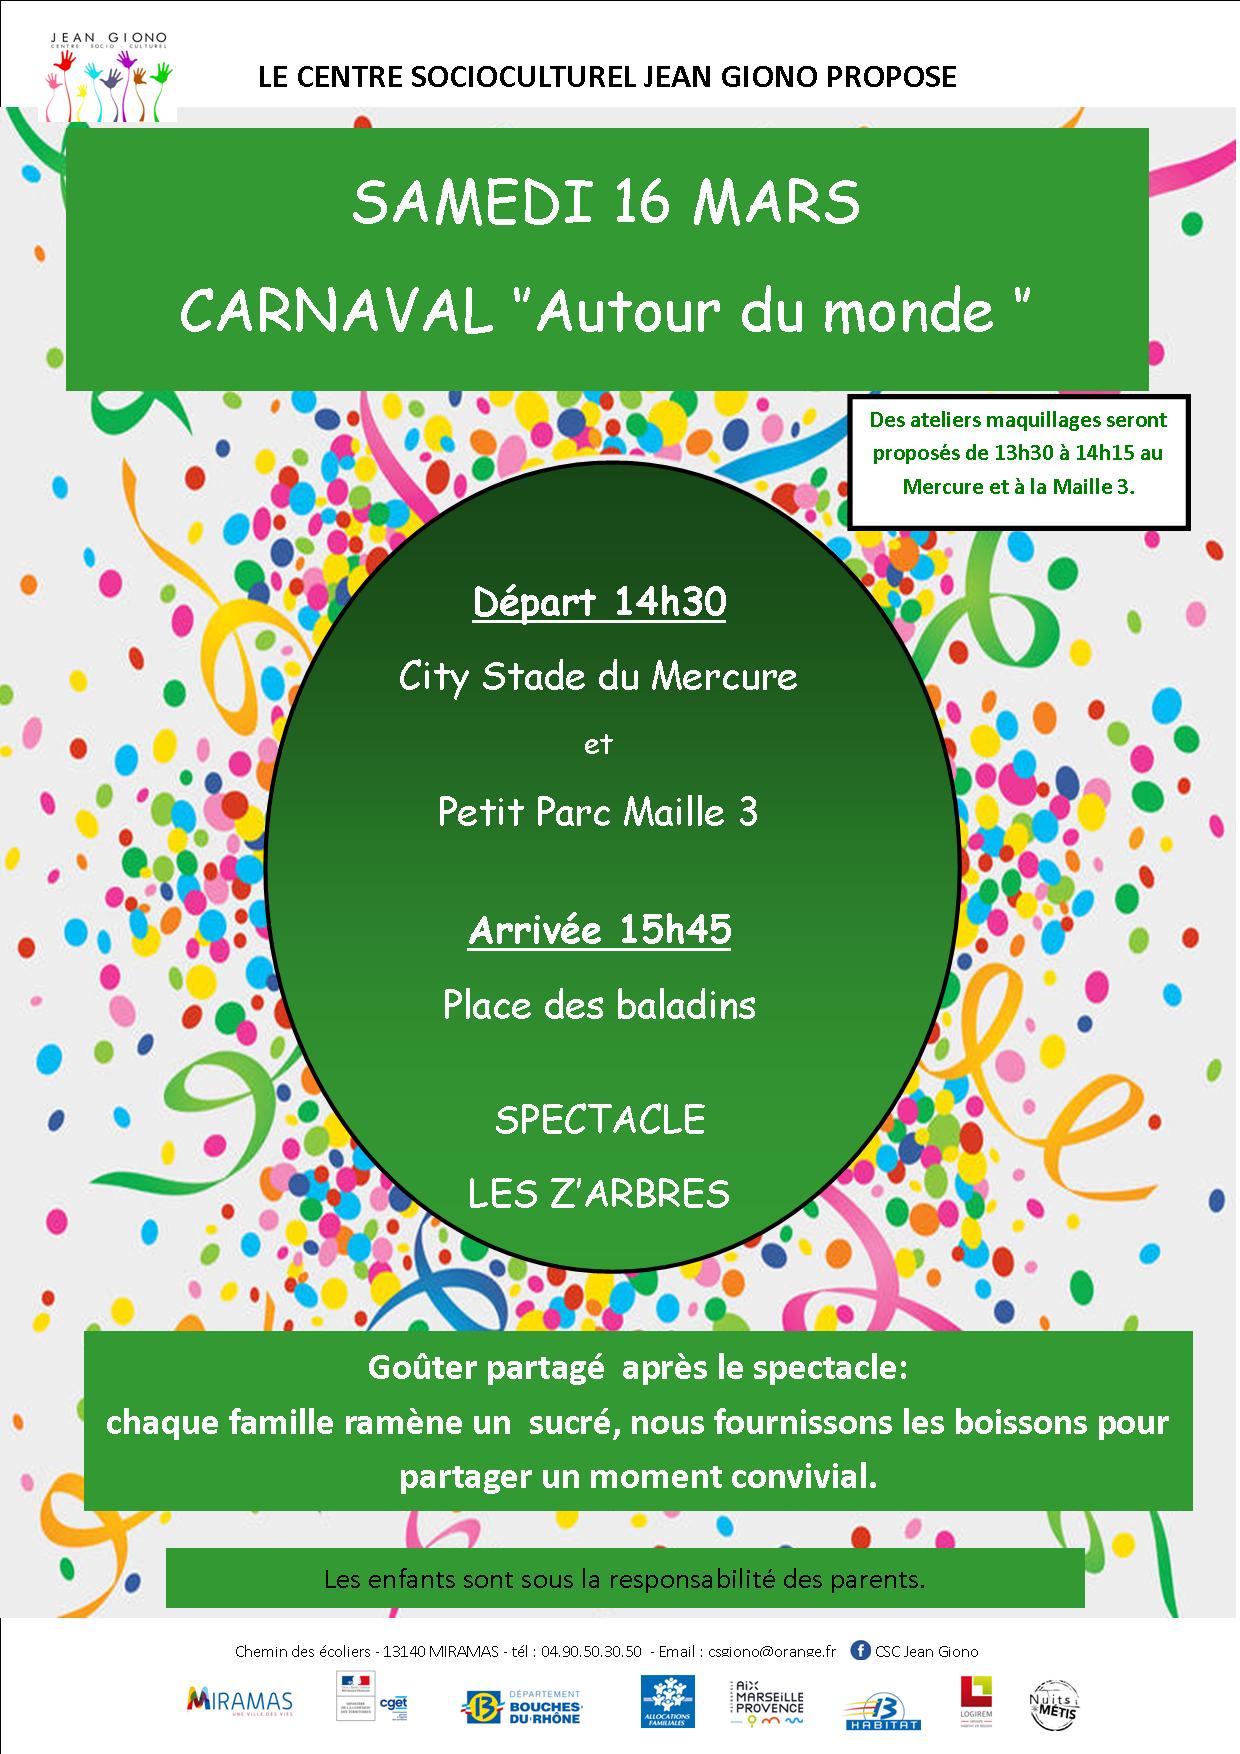 Le Carnaval autour du monde du Centre socioculturel Jean Giono ...